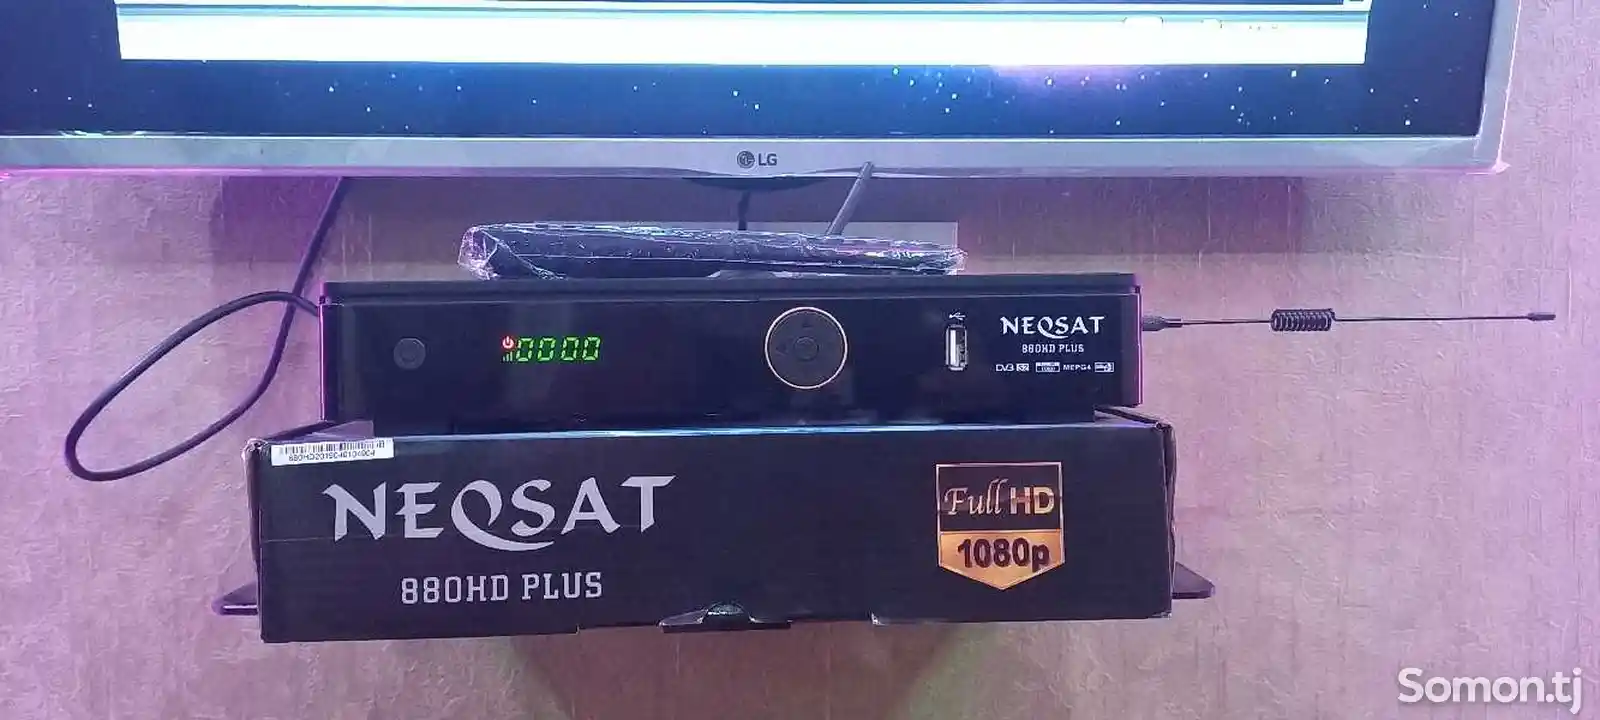 Спутниковый ресивер Neosat 880 HD PLUS-6